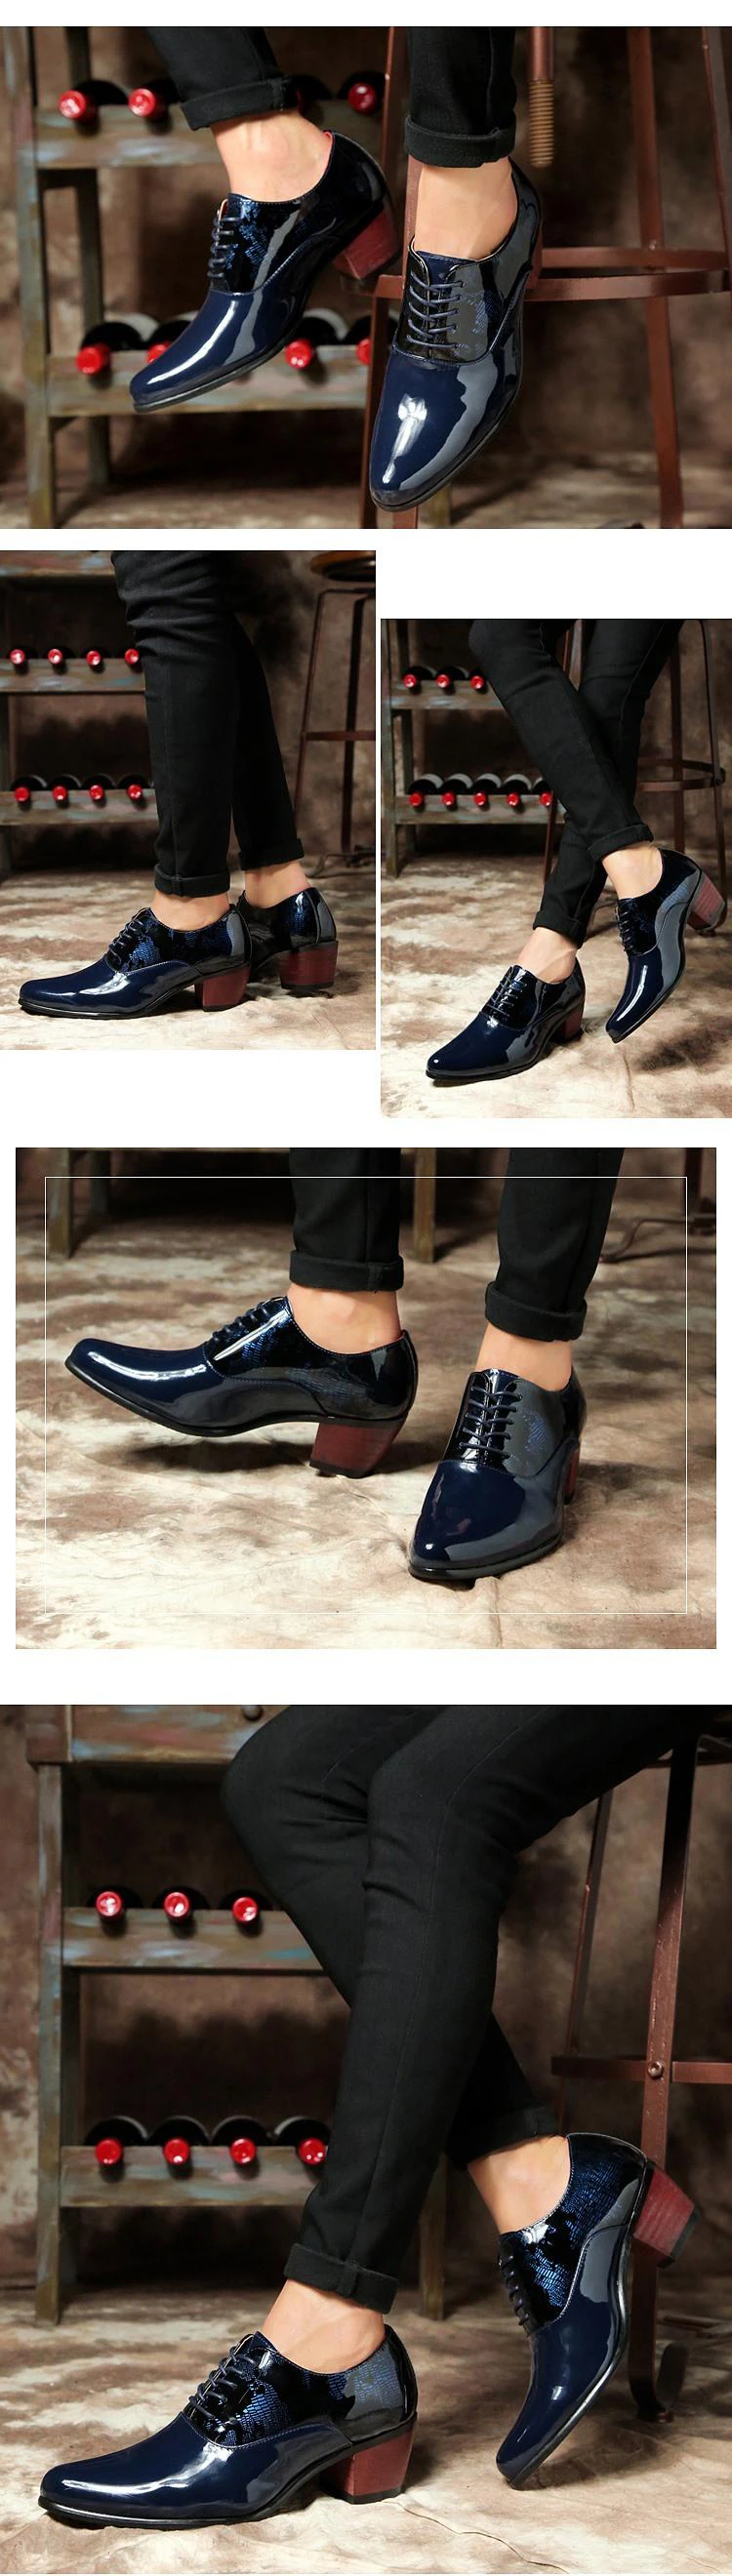 Каблук 4,5 см Роскошные Мужские модельные туфли Для мужчин, на очень высоком каблуке итальянские свадебные туфли Стиль мужской формальный деловой кожаной обуви